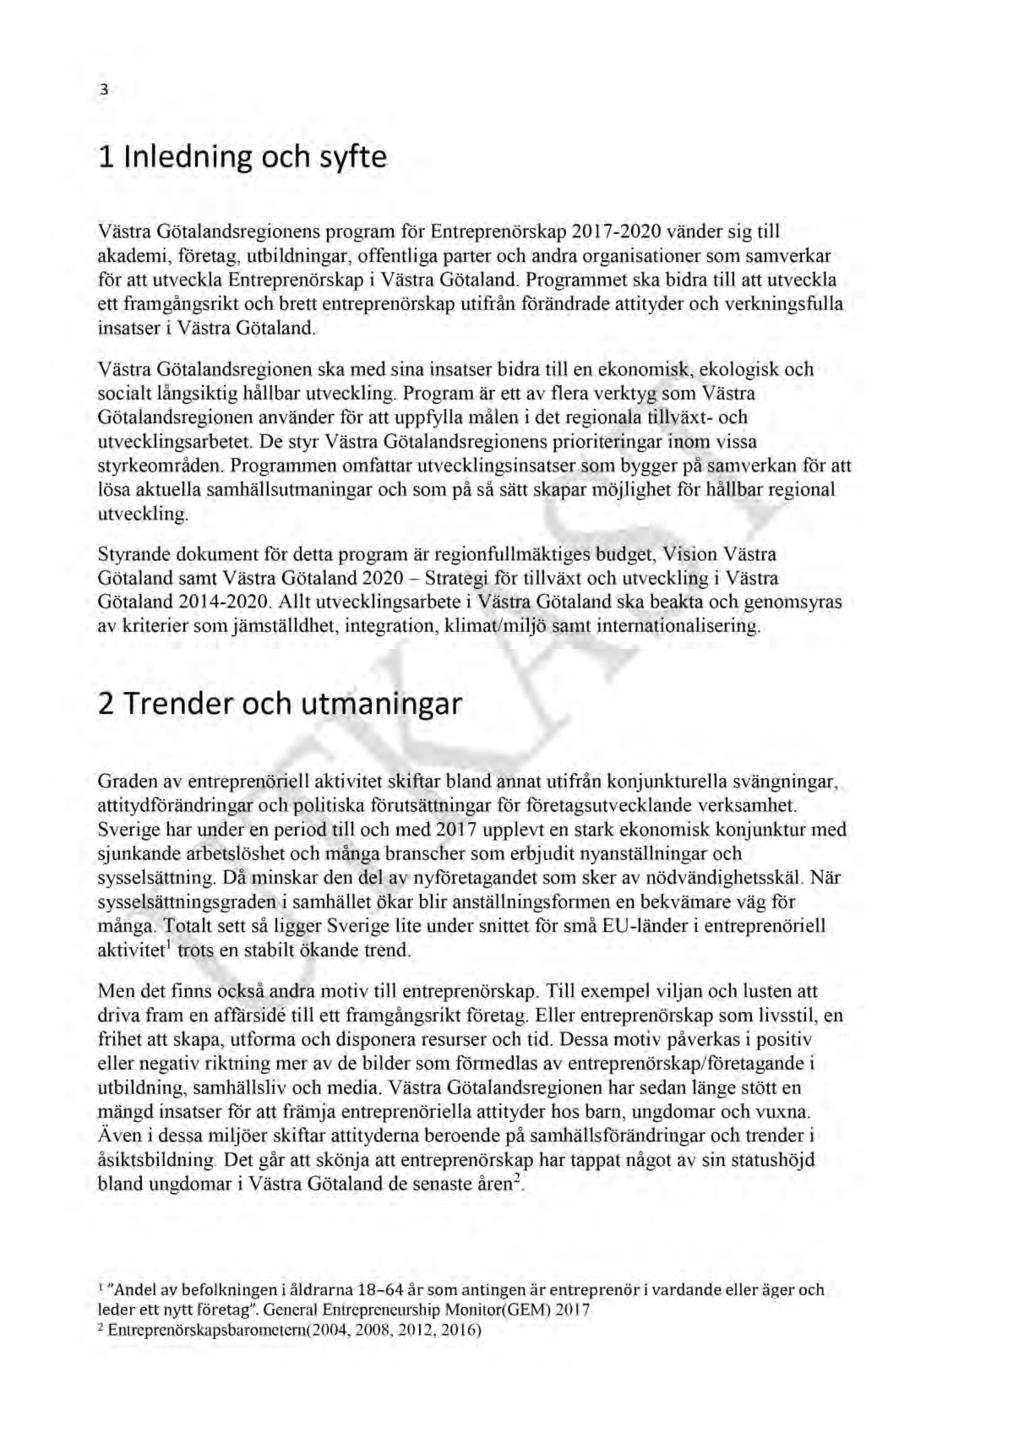 formation om Västra Götalandsregionens program för entreprenörskap 2017-2020 - RUN 2017-00794-3 Västra Götalandsregionens program för entreprenörskap 2017-2020 : Västra Götalandsregionens program för